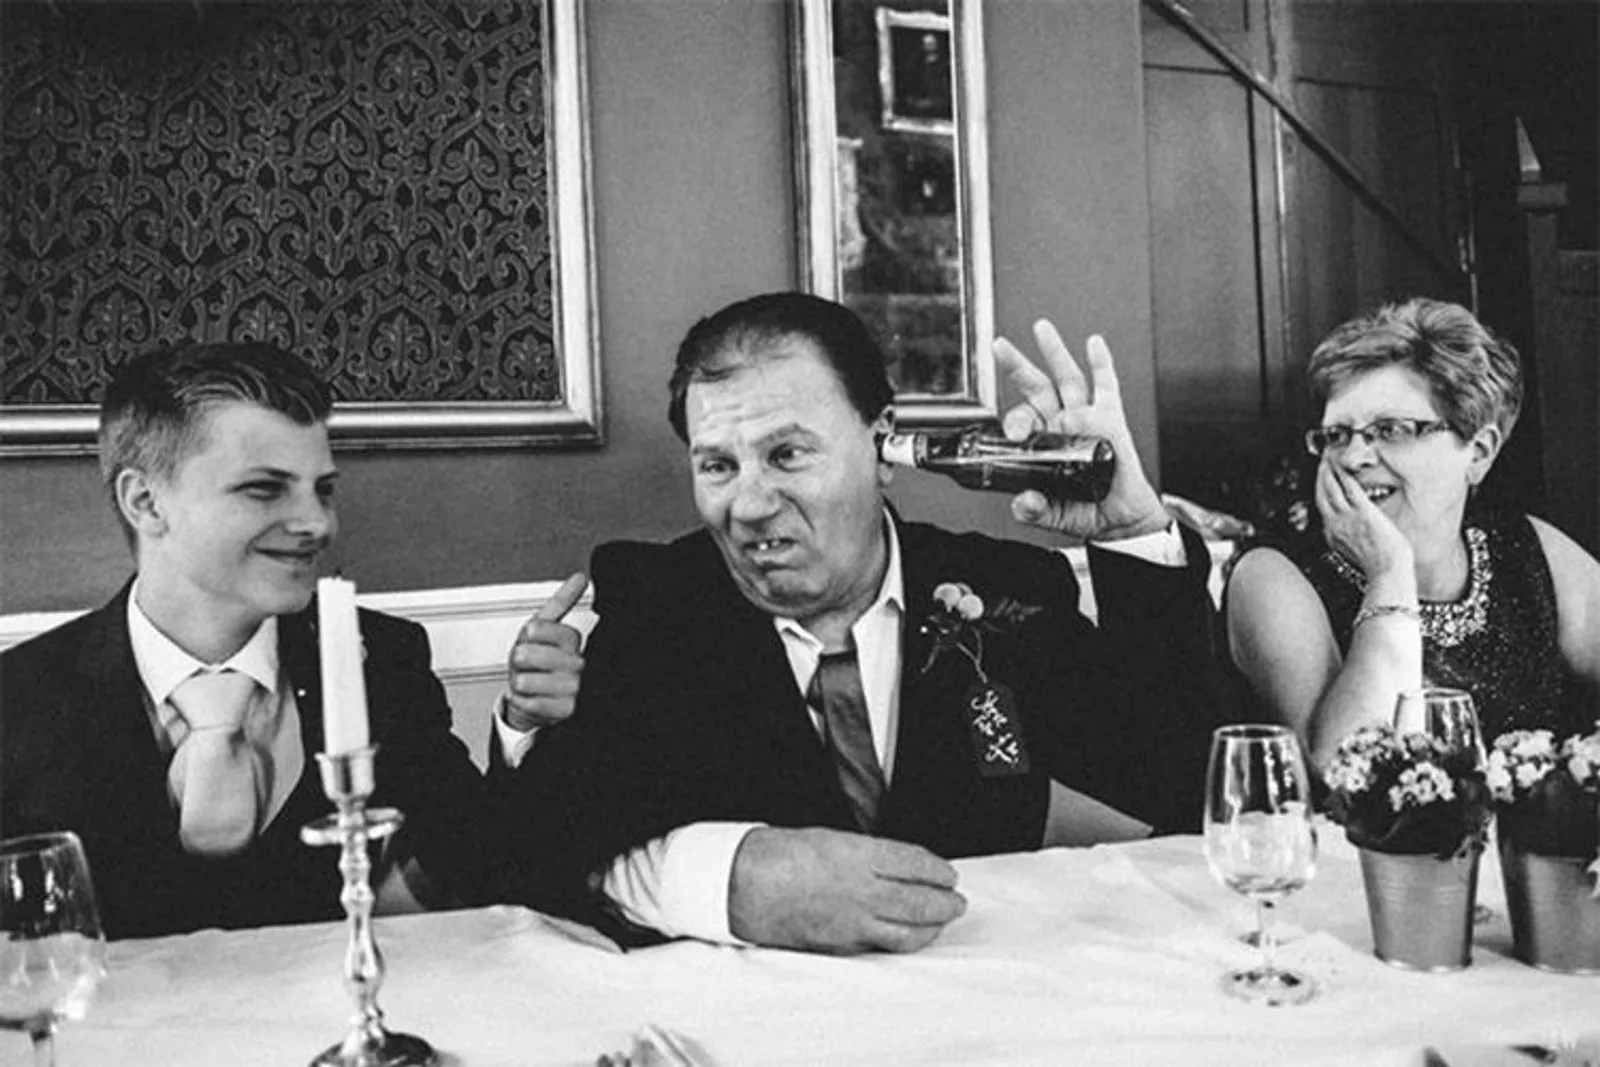 Kocak! 13 Foto Ini Tunjukkan 'Kekacauan' Pernikahan yang Bikin Tertawa